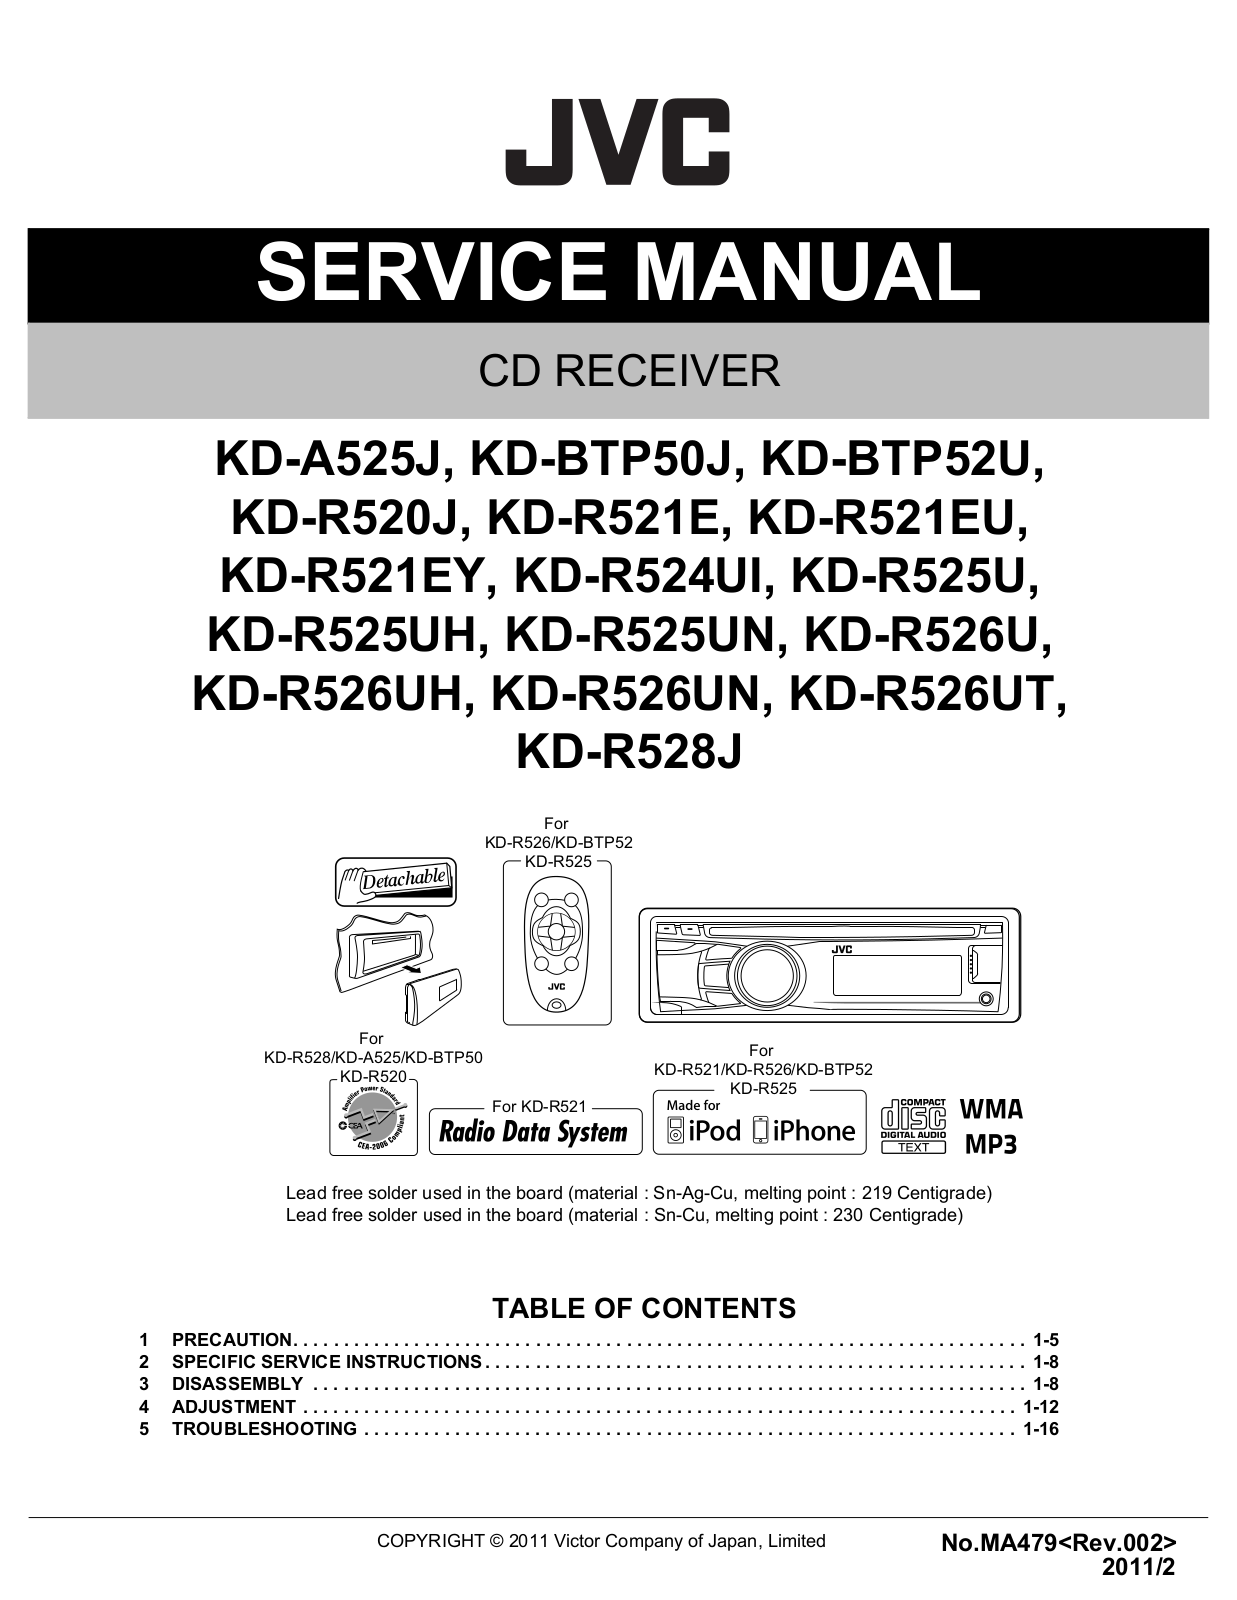 Jvc KD-R528-J, KD-R525, KD-R524-UI, KD-R521-E, KD-R520-J Service Manual